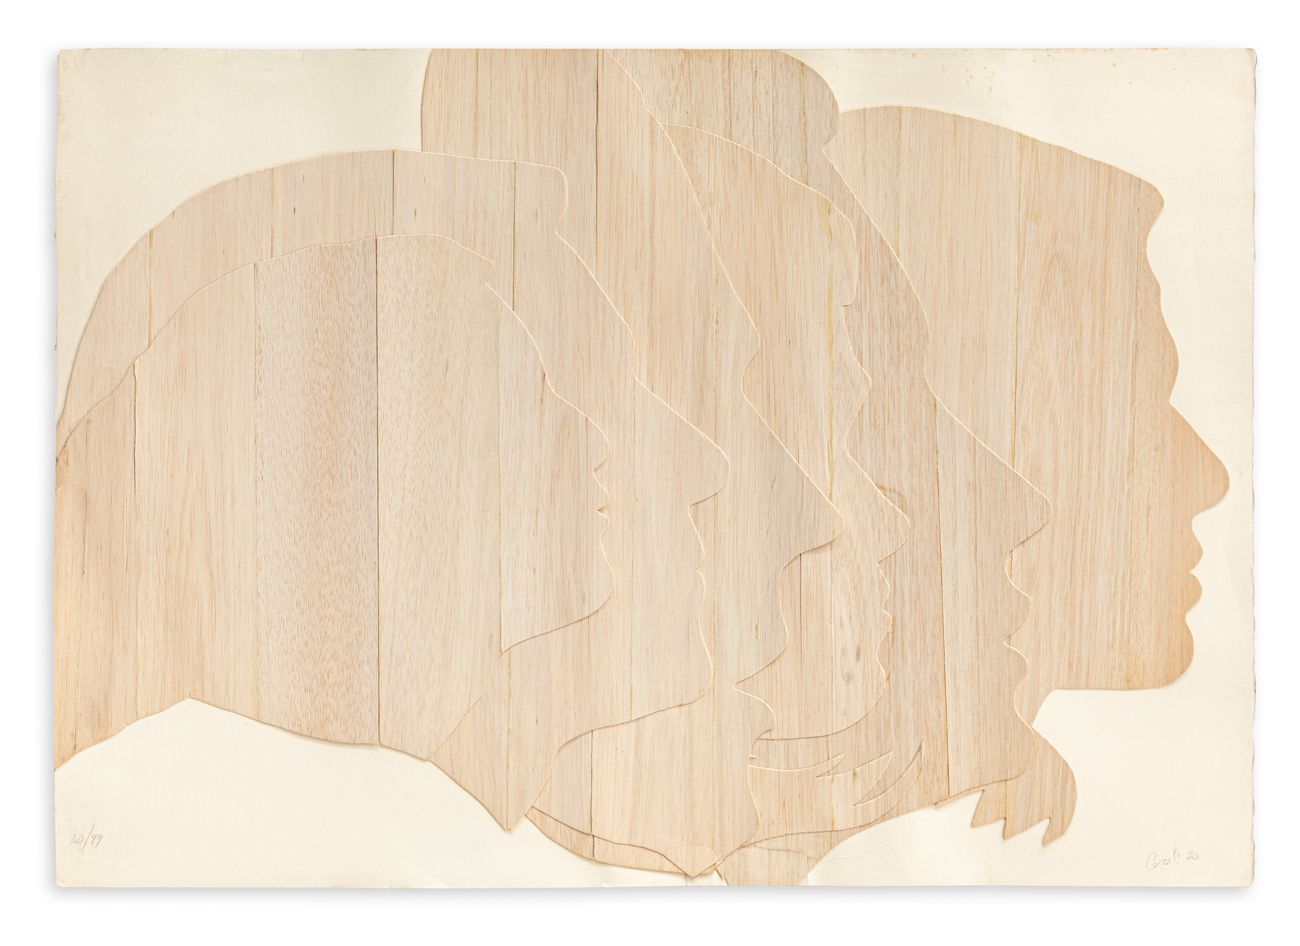 MARIO CEROLI (1938) - Profili, 1970 Profili di legno balsa applicati su cartonci&hellip;